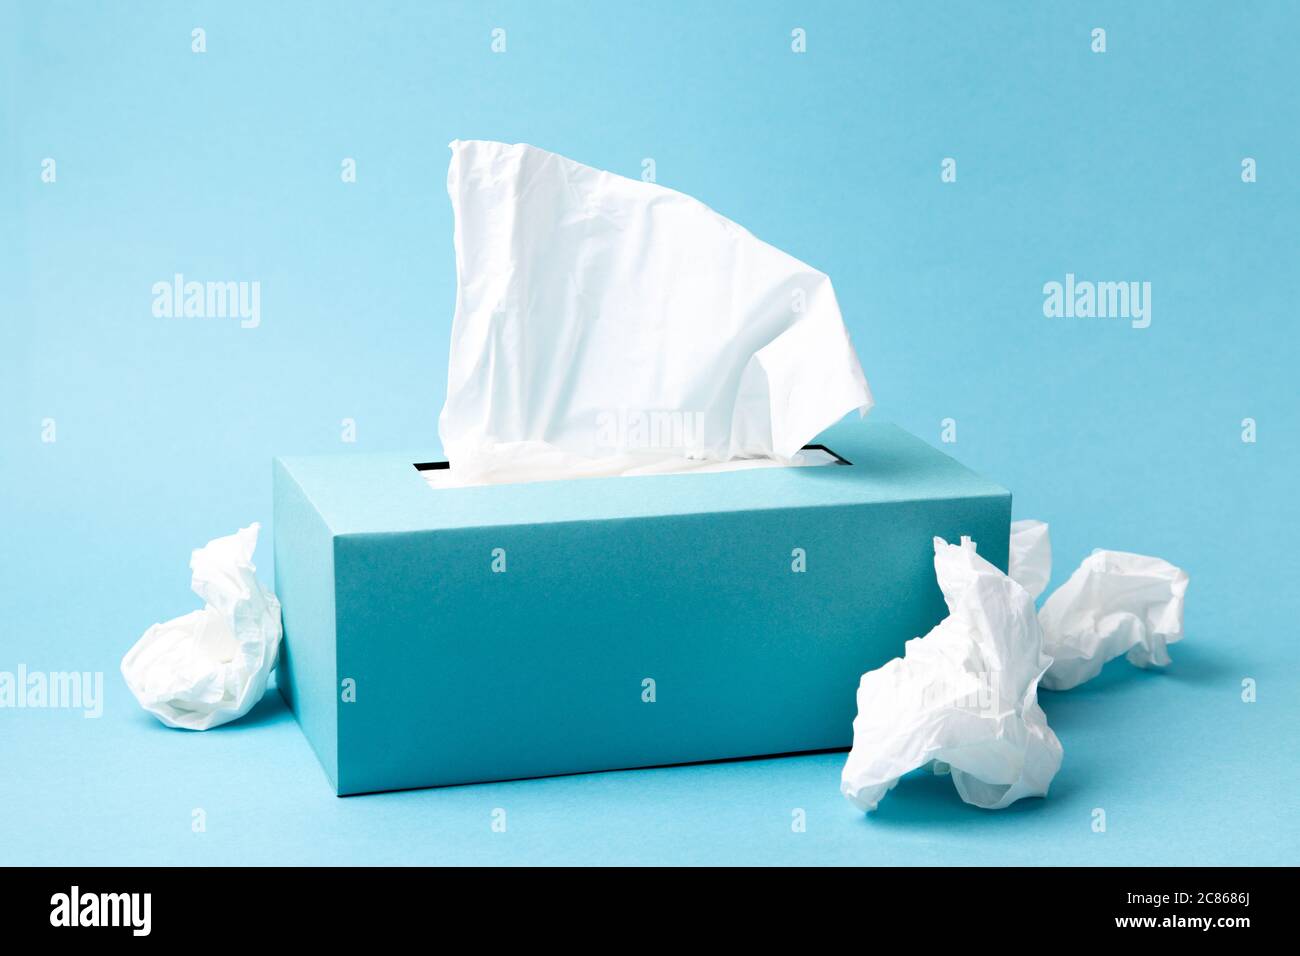 Boîte de mouchoirs bleu clair et mouchoirs froissés sur fond bleu. Le froid  et la grippe concept. Composition monochromatique minimale Photo Stock -  Alamy